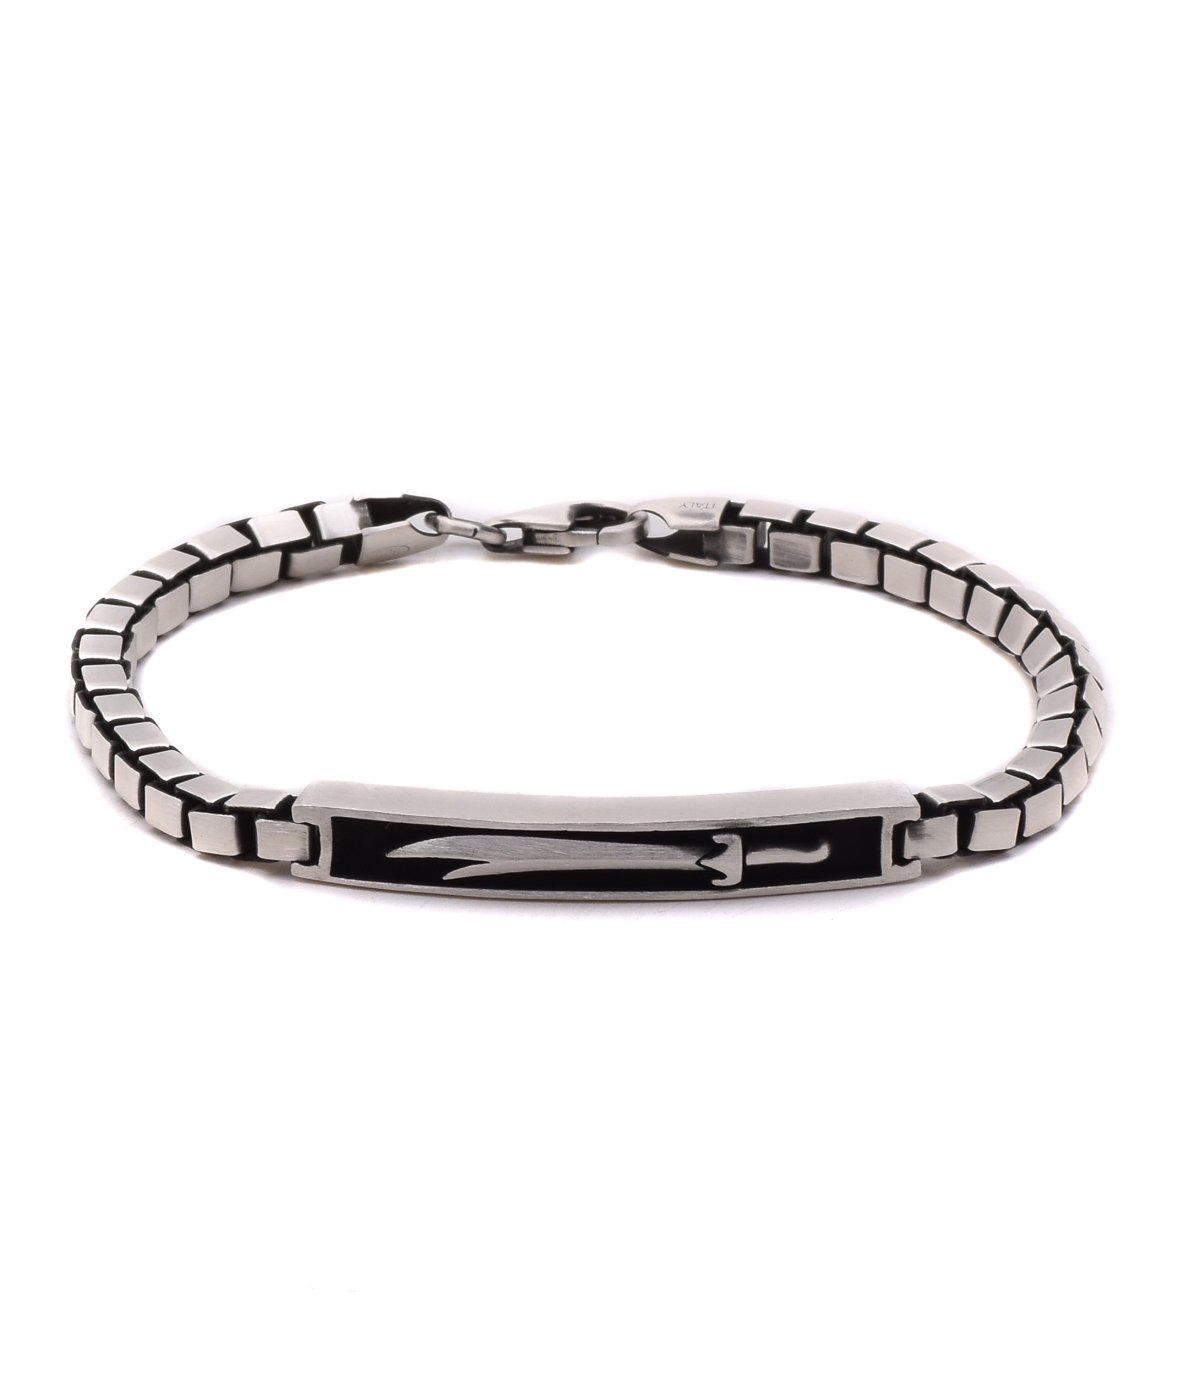 Silver Fancy Look Bracelet For Girls And Women Daily Wear Jewelry - Silver  Shine - 3207458